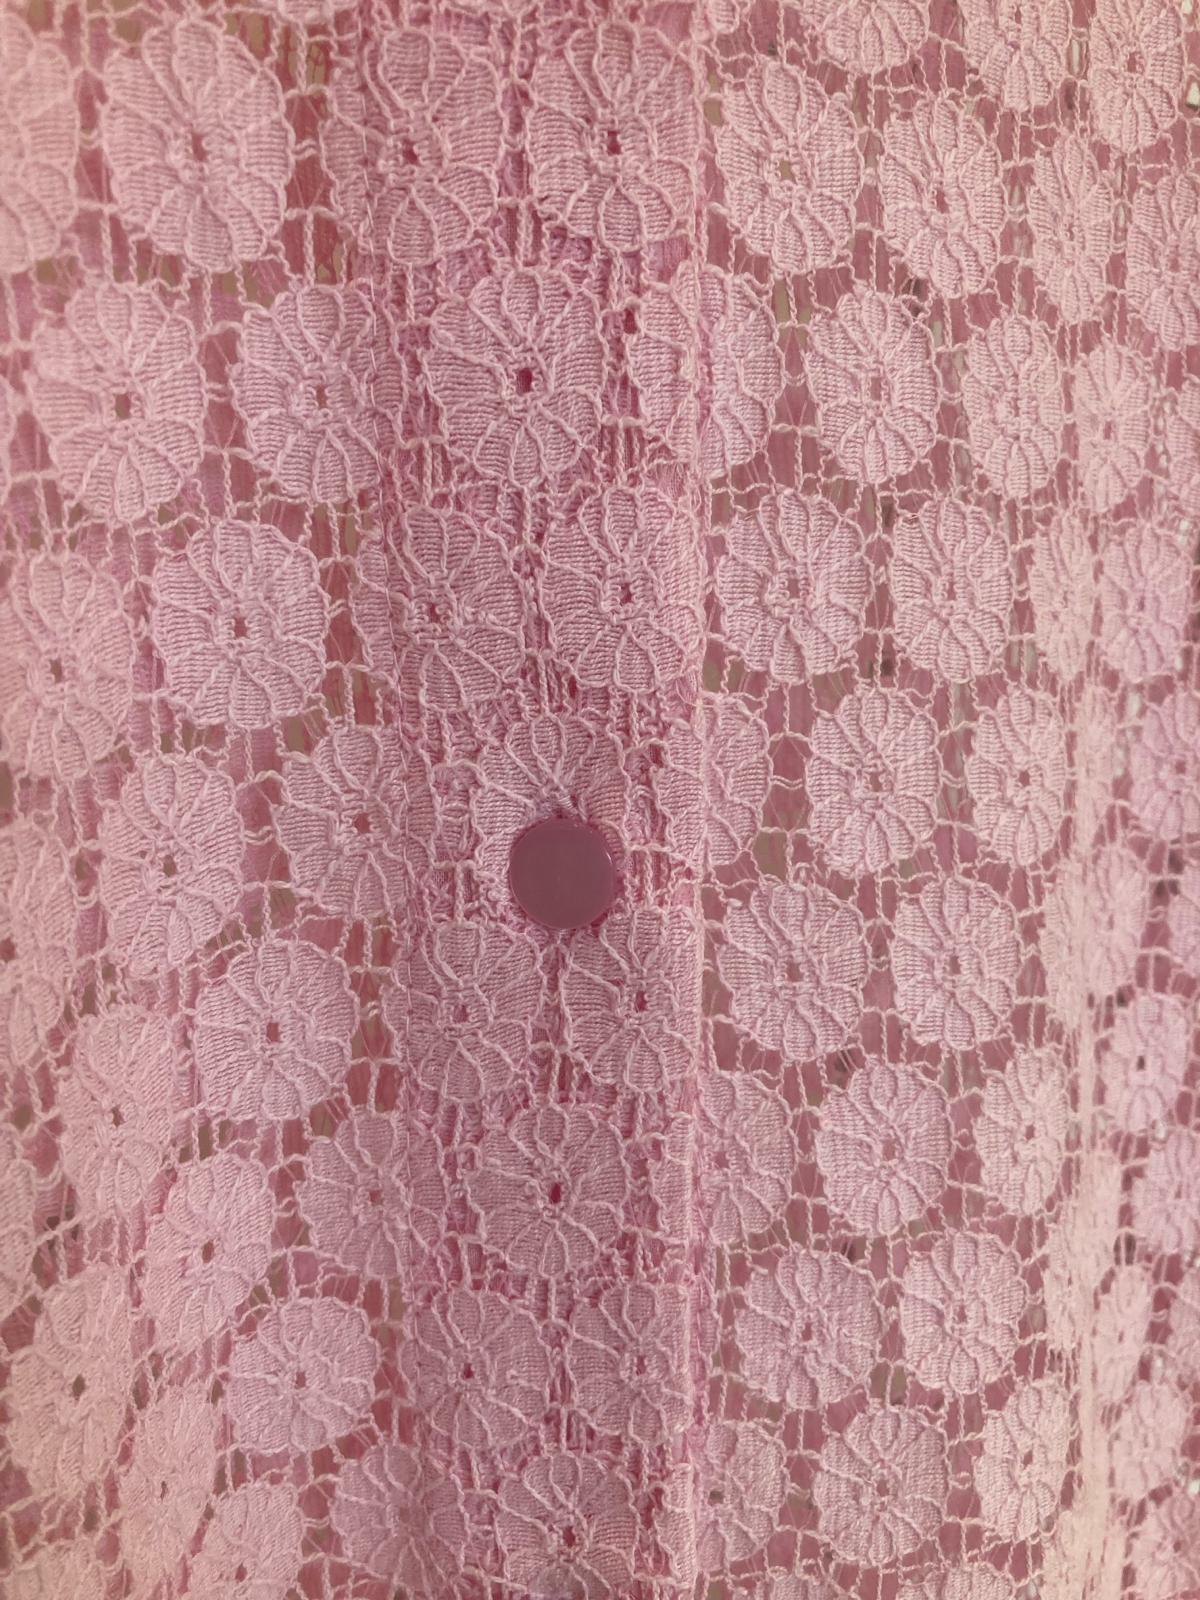 Pretty Pink lacey blouse - Maya Maya Ltd